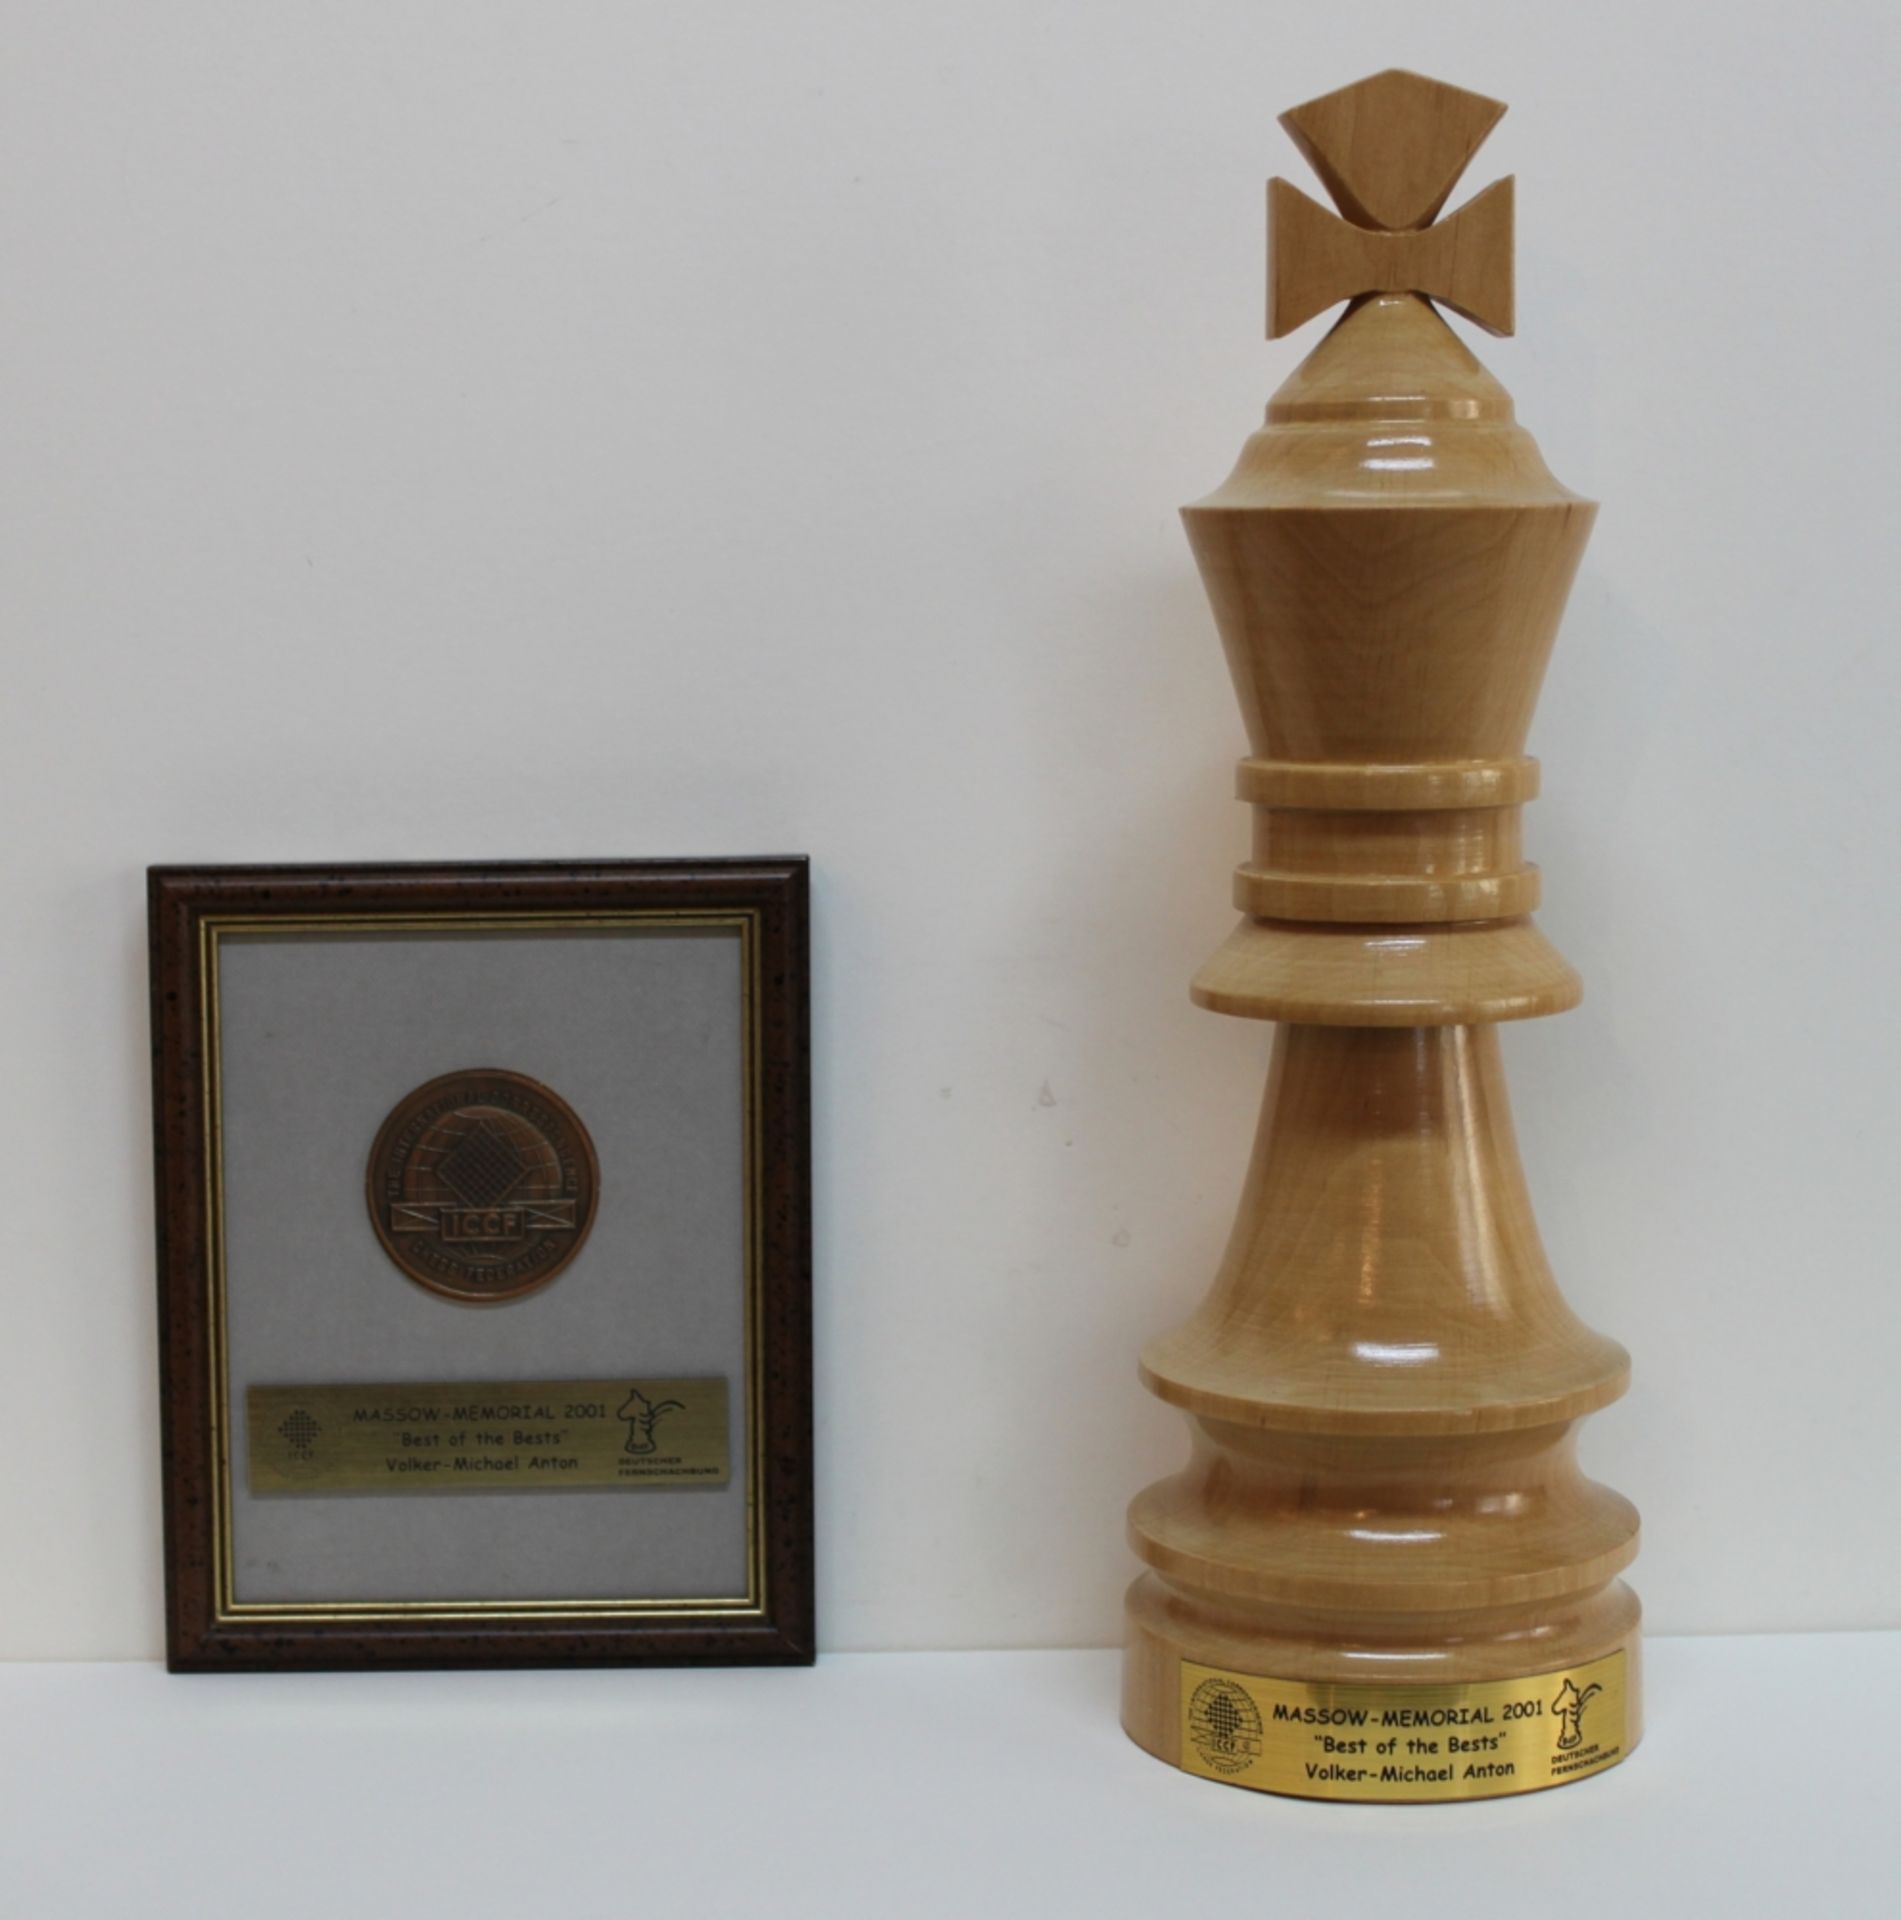 Massow - Memorial. Medaille und Königsfigur aus Holz zum Sieg von Anton im Massow – Memorial Turnier